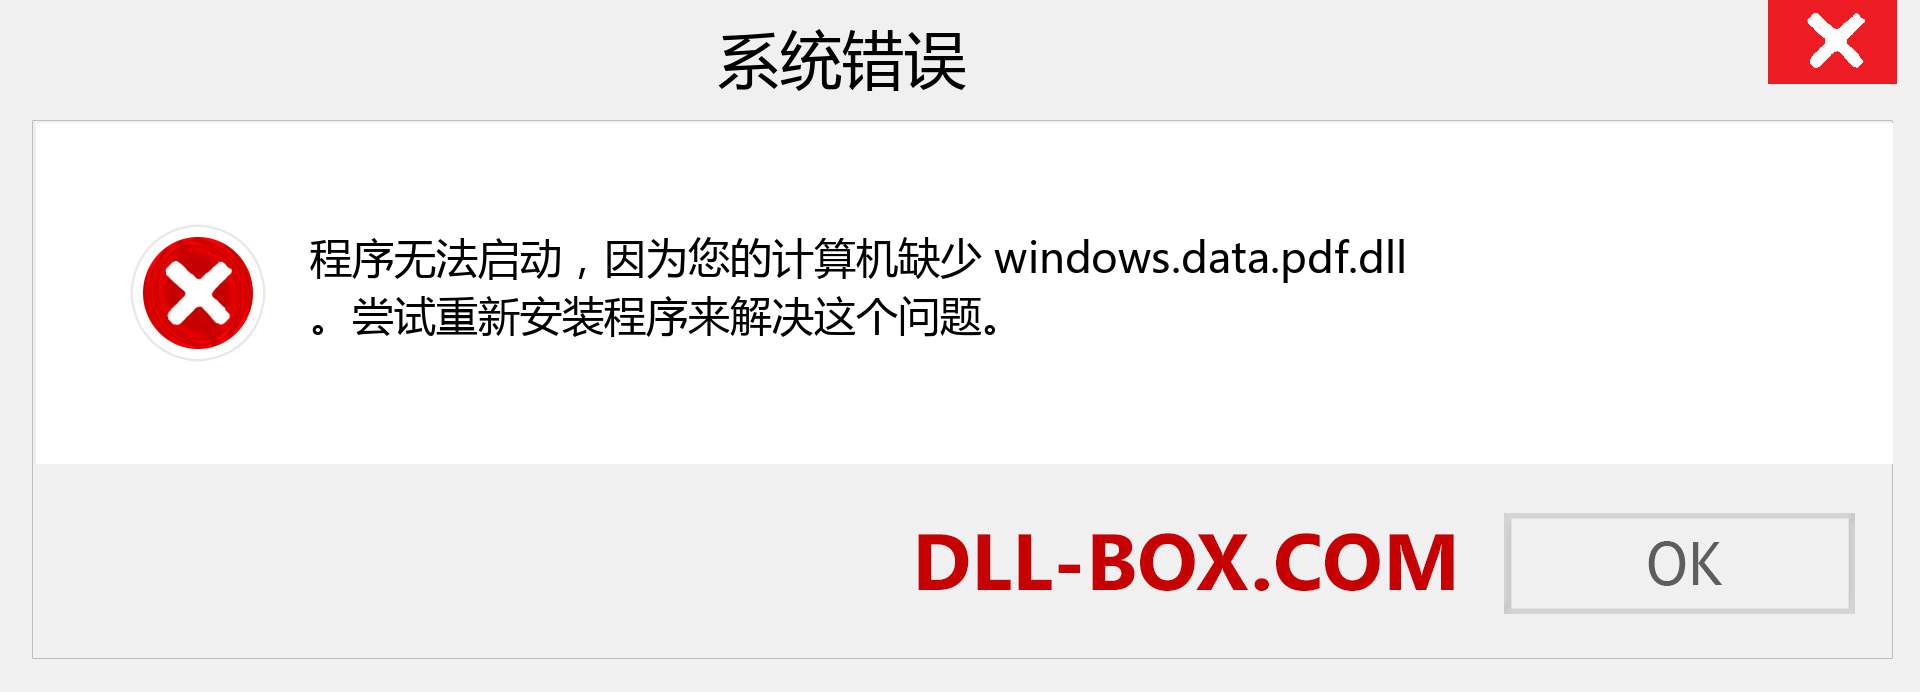 windows.data.pdf.dll 文件丢失？。 适用于 Windows 7、8、10 的下载 - 修复 Windows、照片、图像上的 windows.data.pdf dll 丢失错误